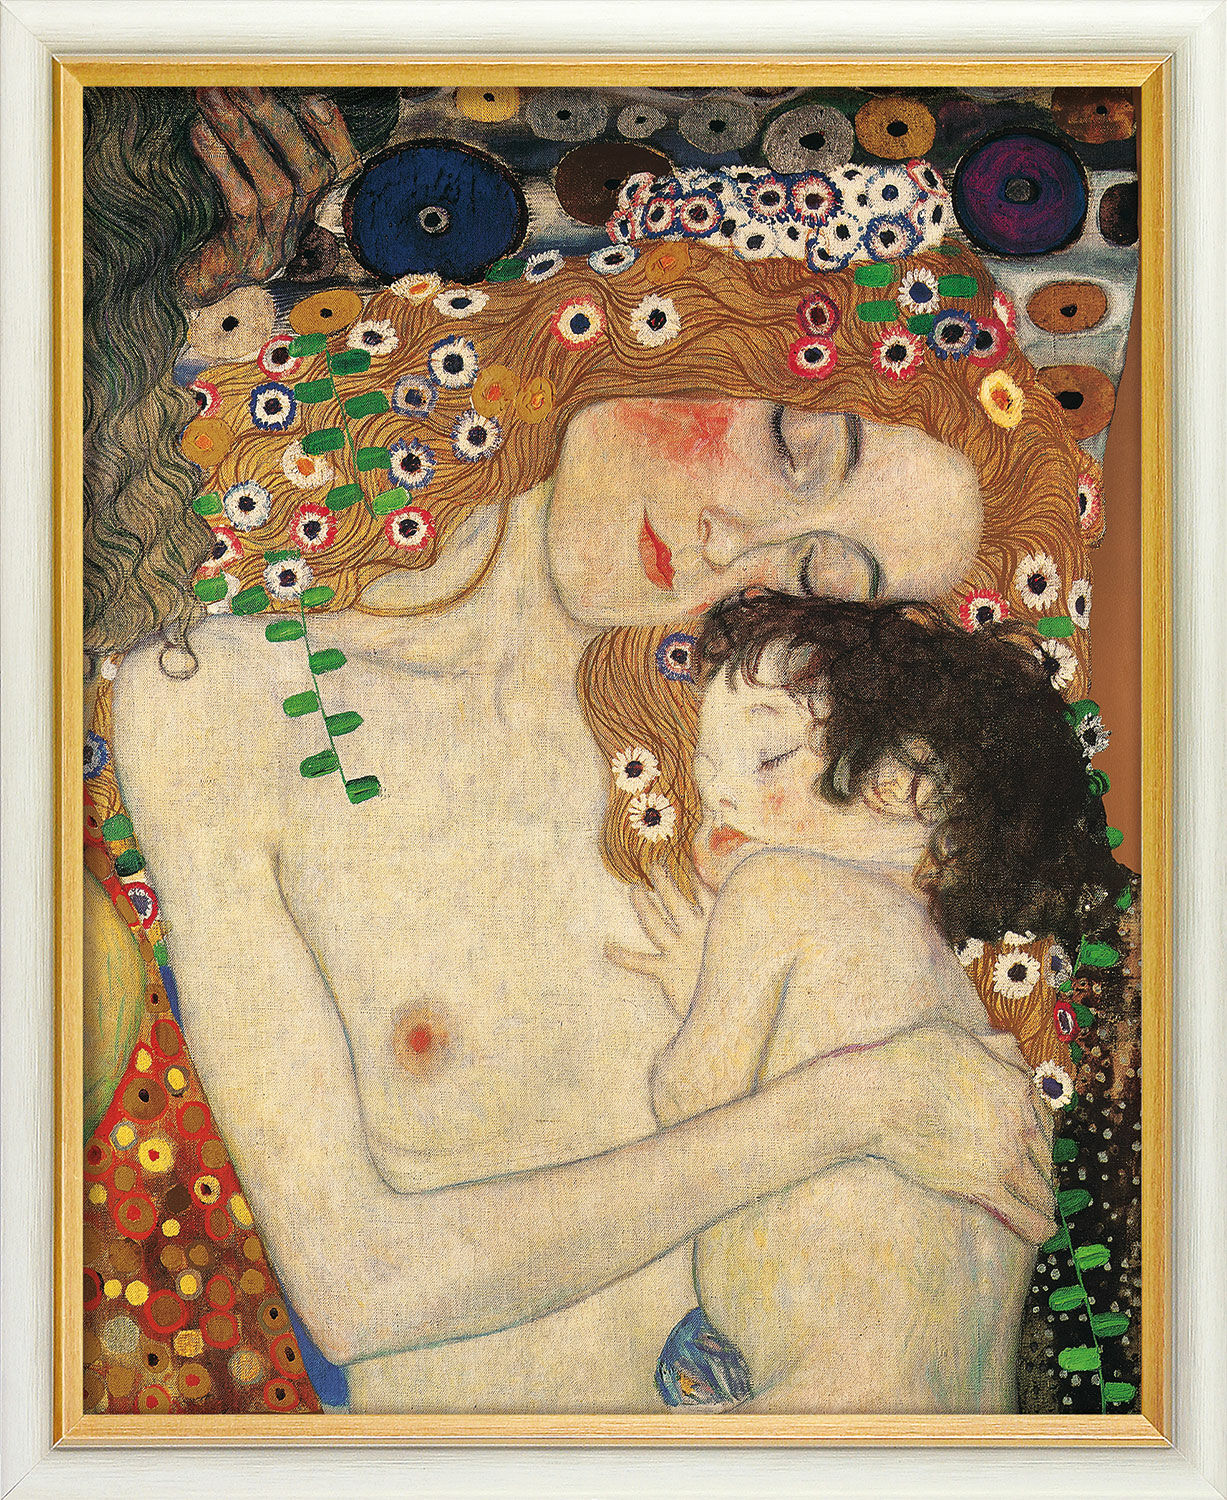 Tableau "Mère et enfant" (1905), encadré von Gustav Klimt